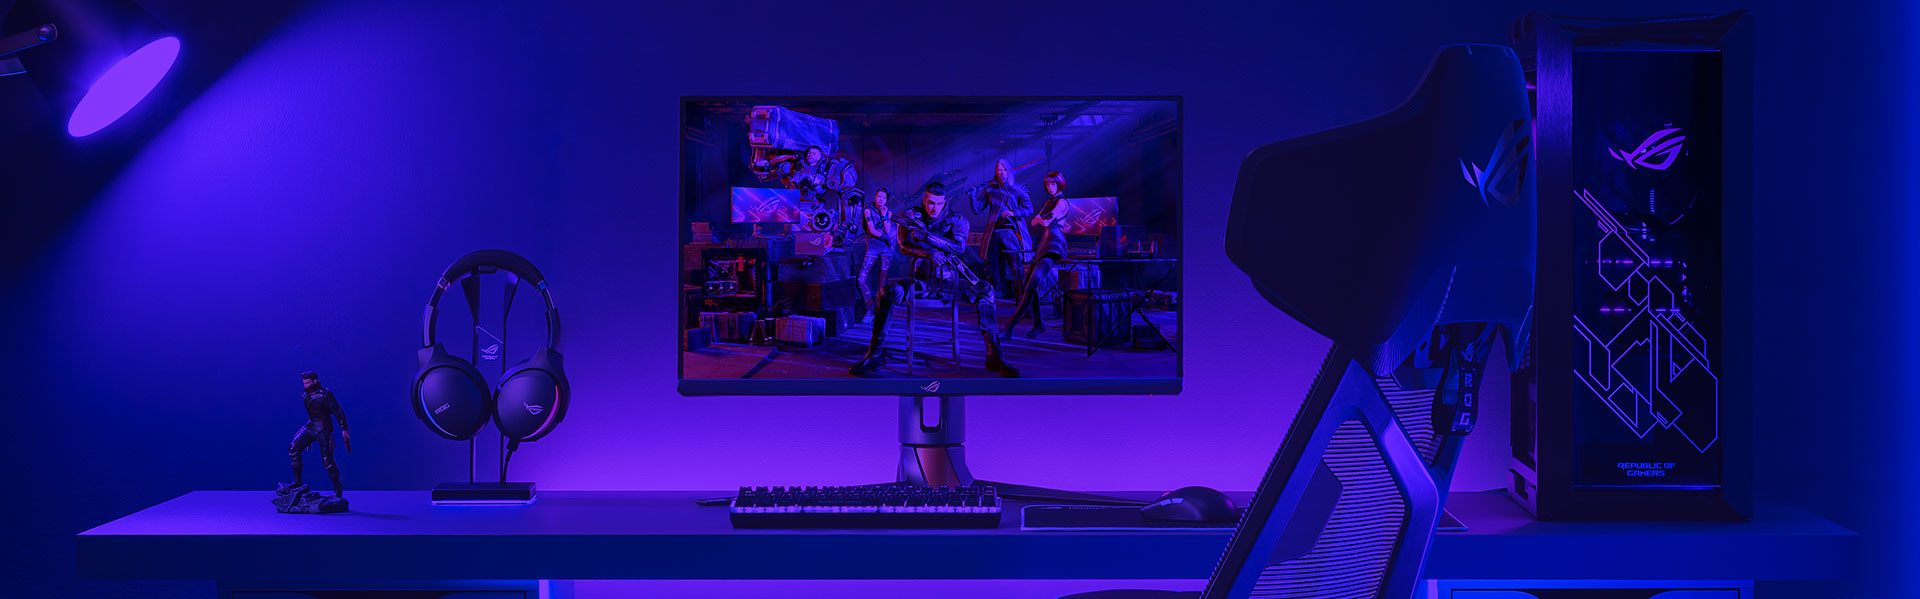 ROG 游戏显示器搭配一台 PC、一个键盘和鼠标，以及桌上的一个耳机的设置。